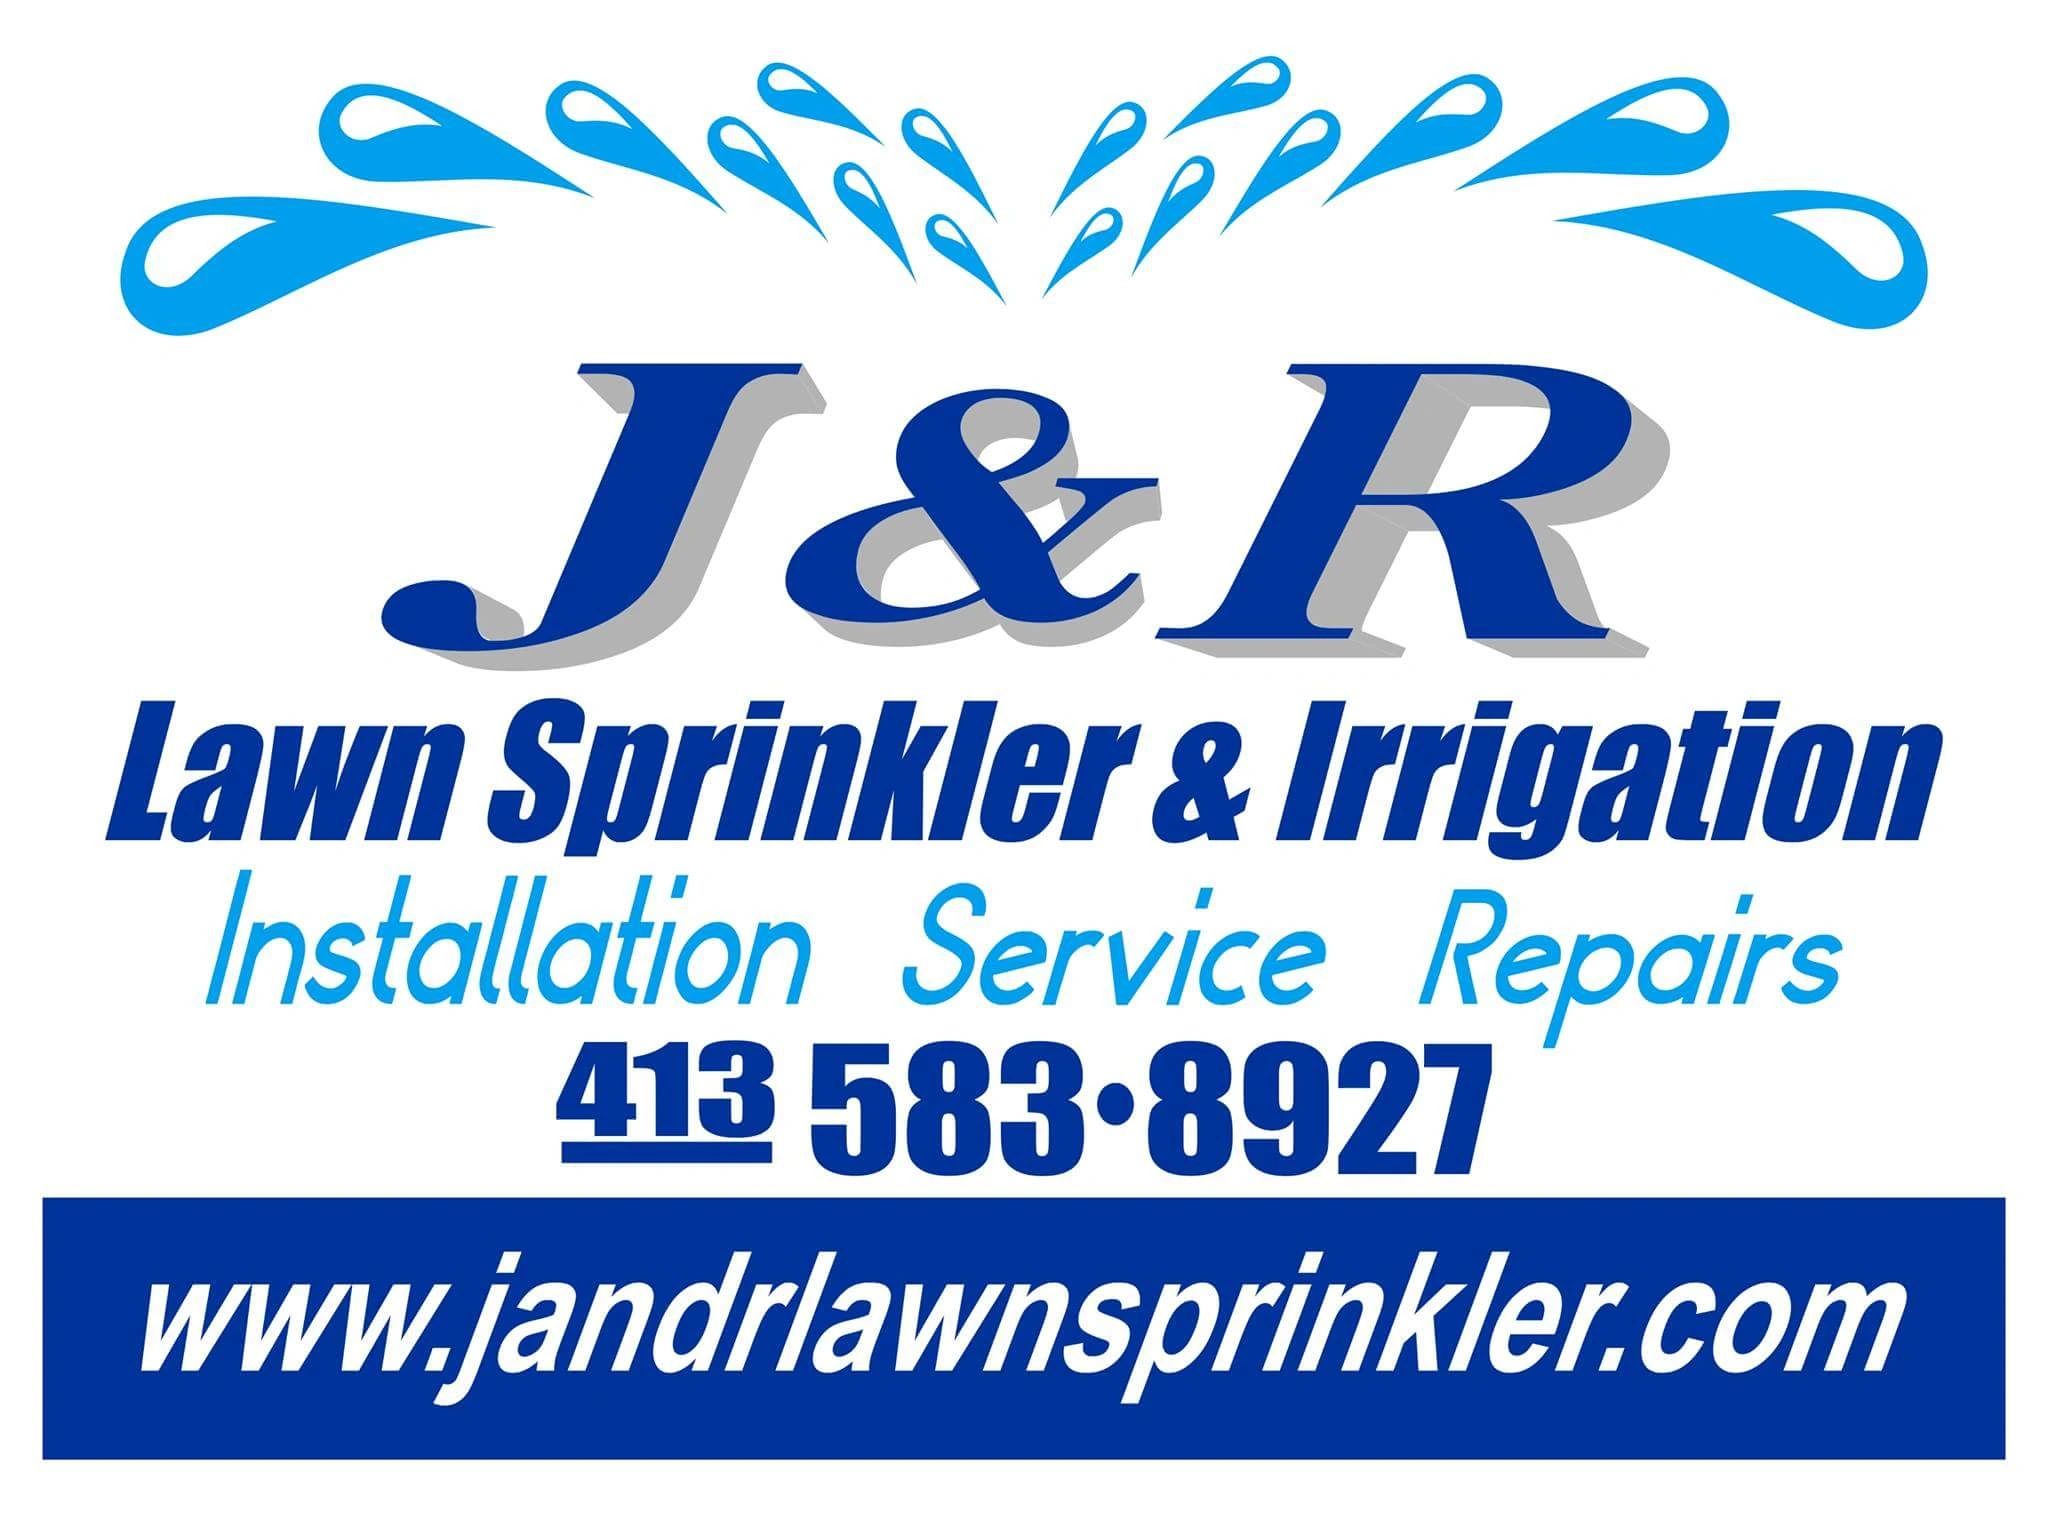 J&R Lawn Sprinkler & Irrigation Logo